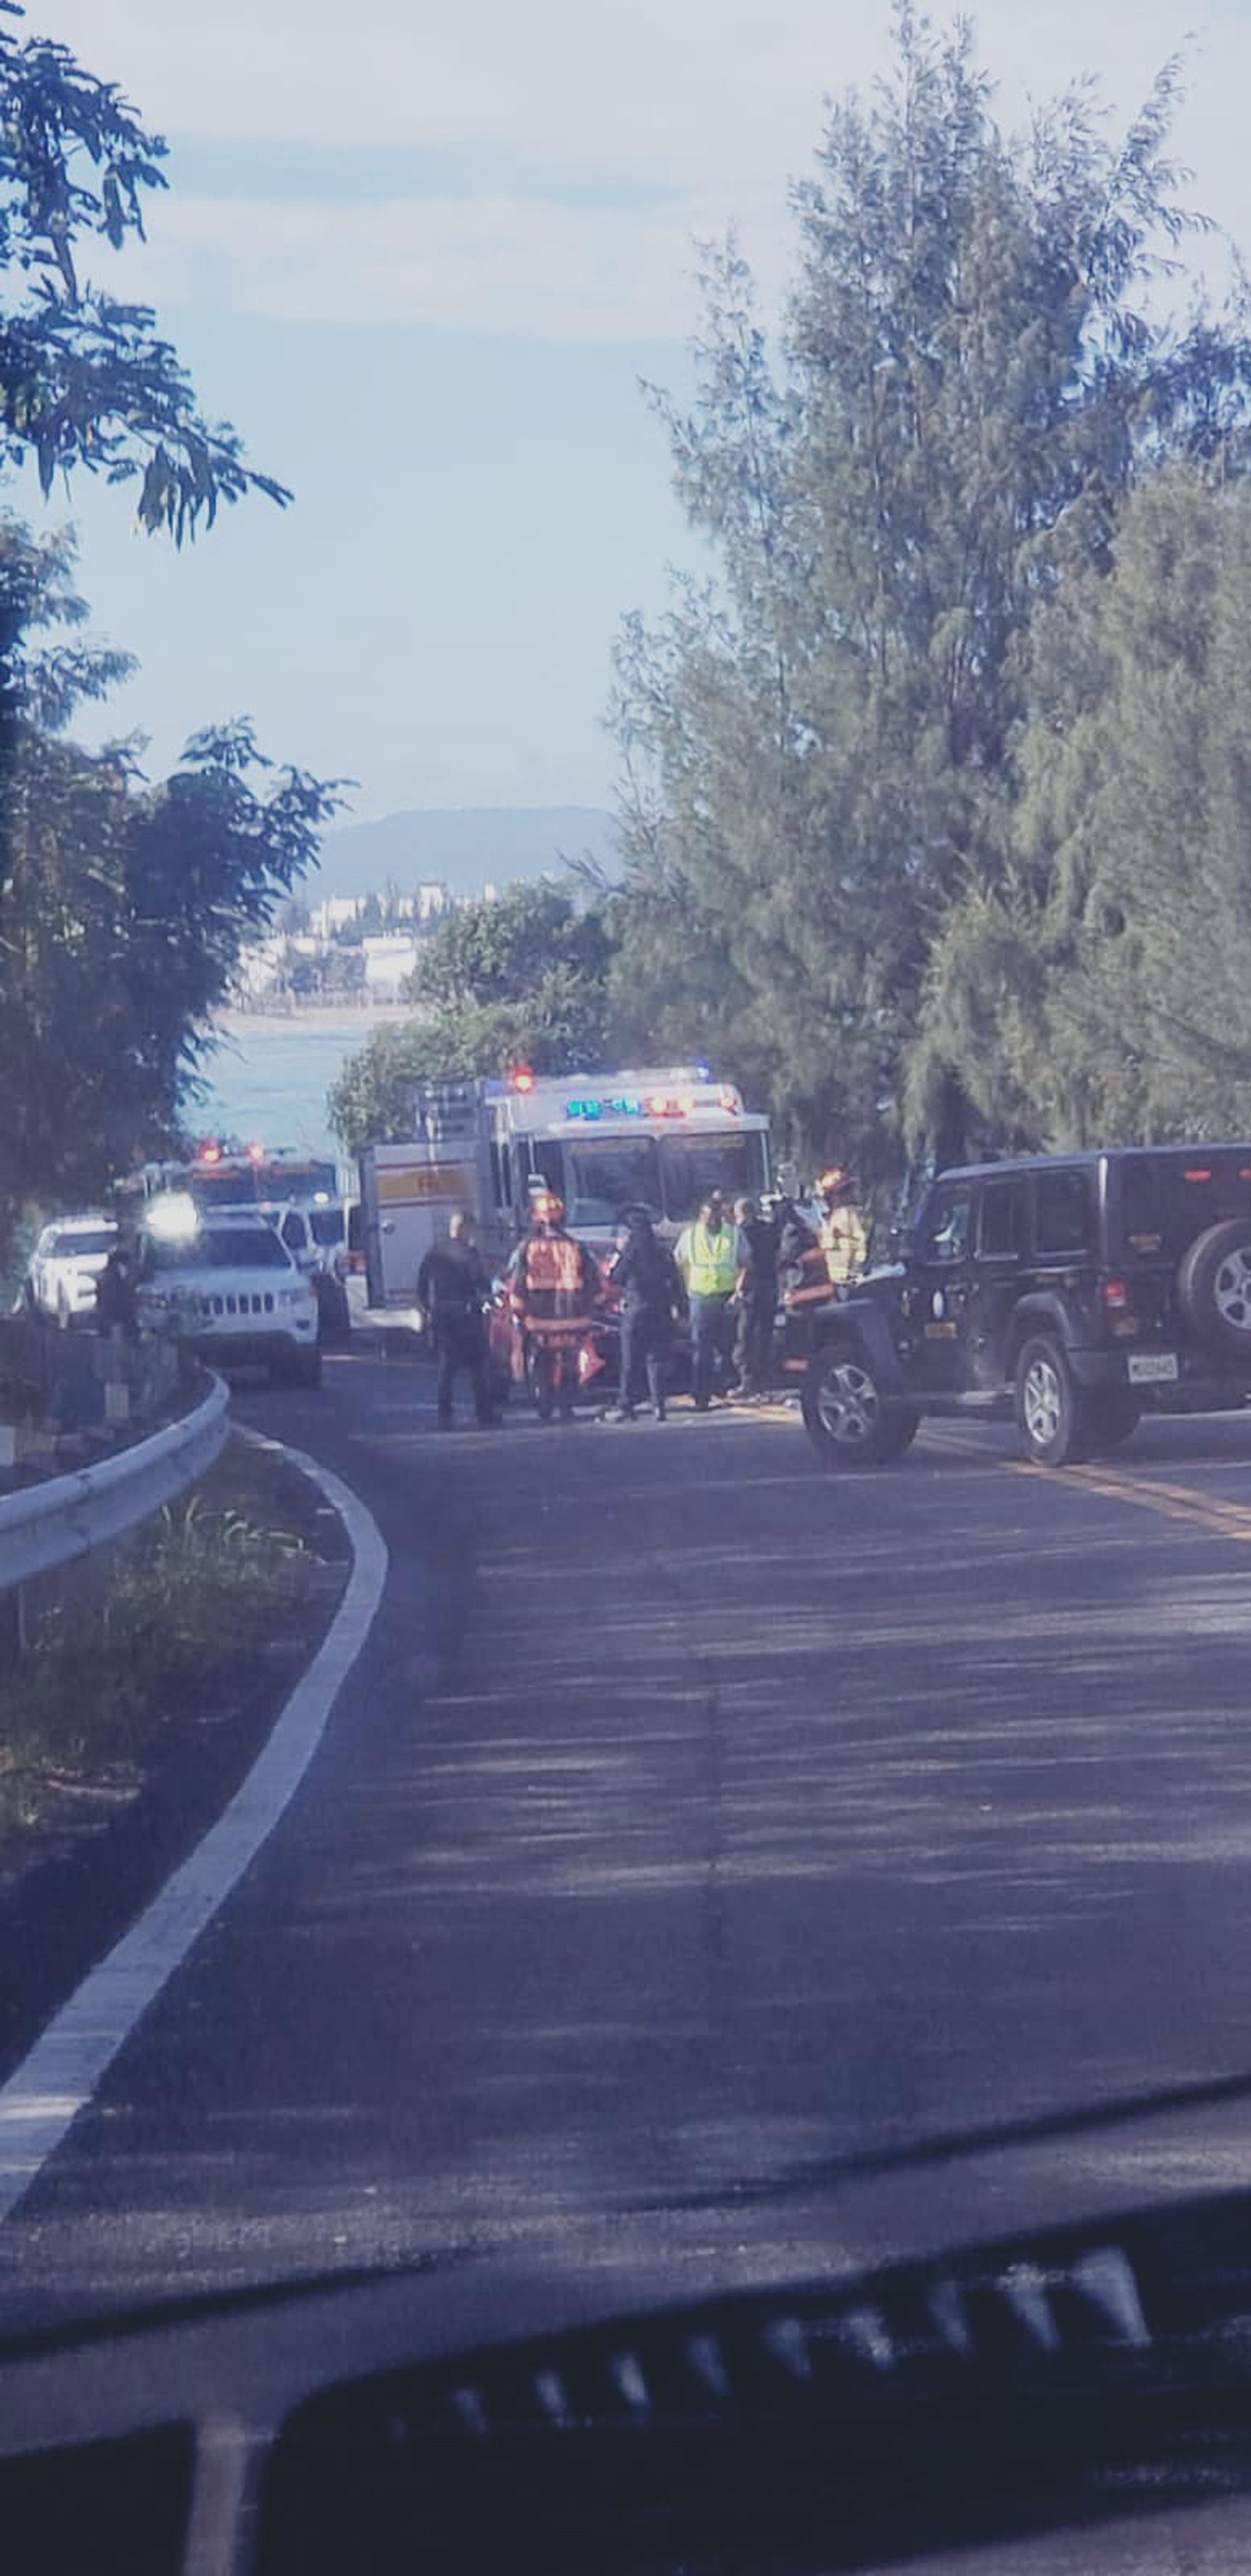 Dos vehículos chocaron de frente en el kilómetro 4.6 de la carretera PR-187, cerca del puente de Boca de Cangrejos, en Piñones.